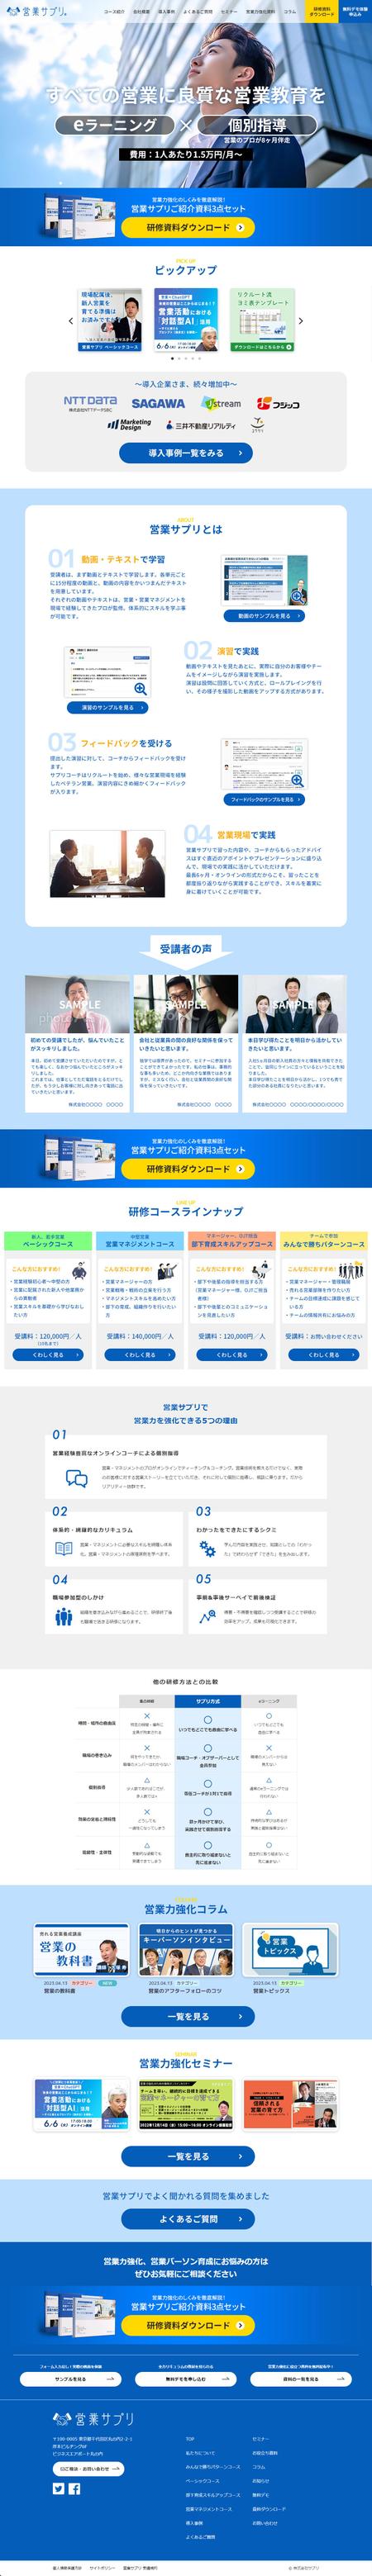 大関康二 (koji_ozeki)さんのオンライン営業研修サイト TOPページデザイン作成への提案